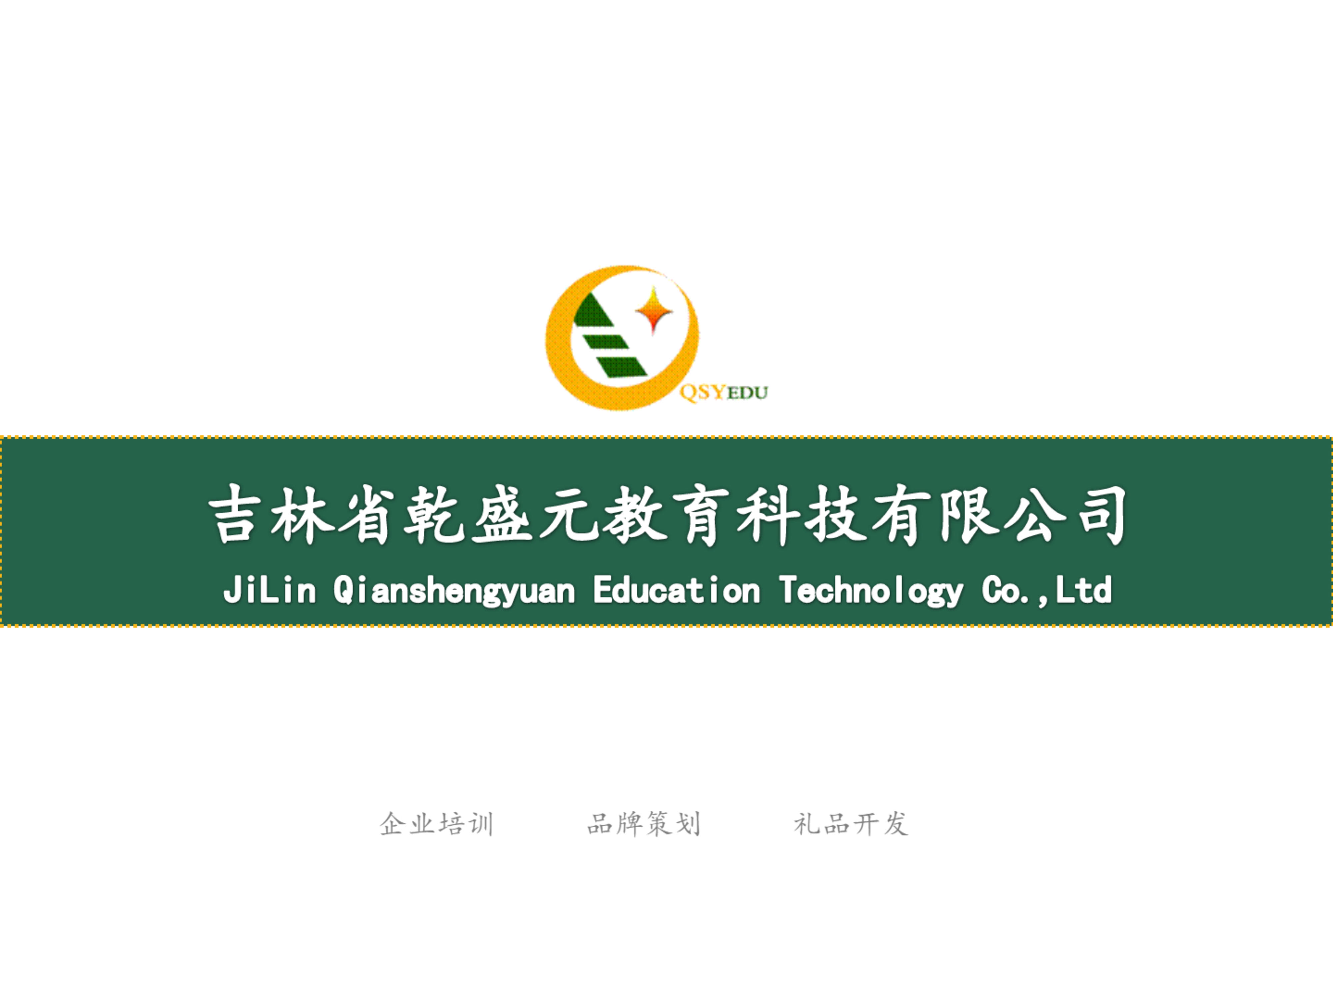 吉林省乾盛元教育科技有限公司